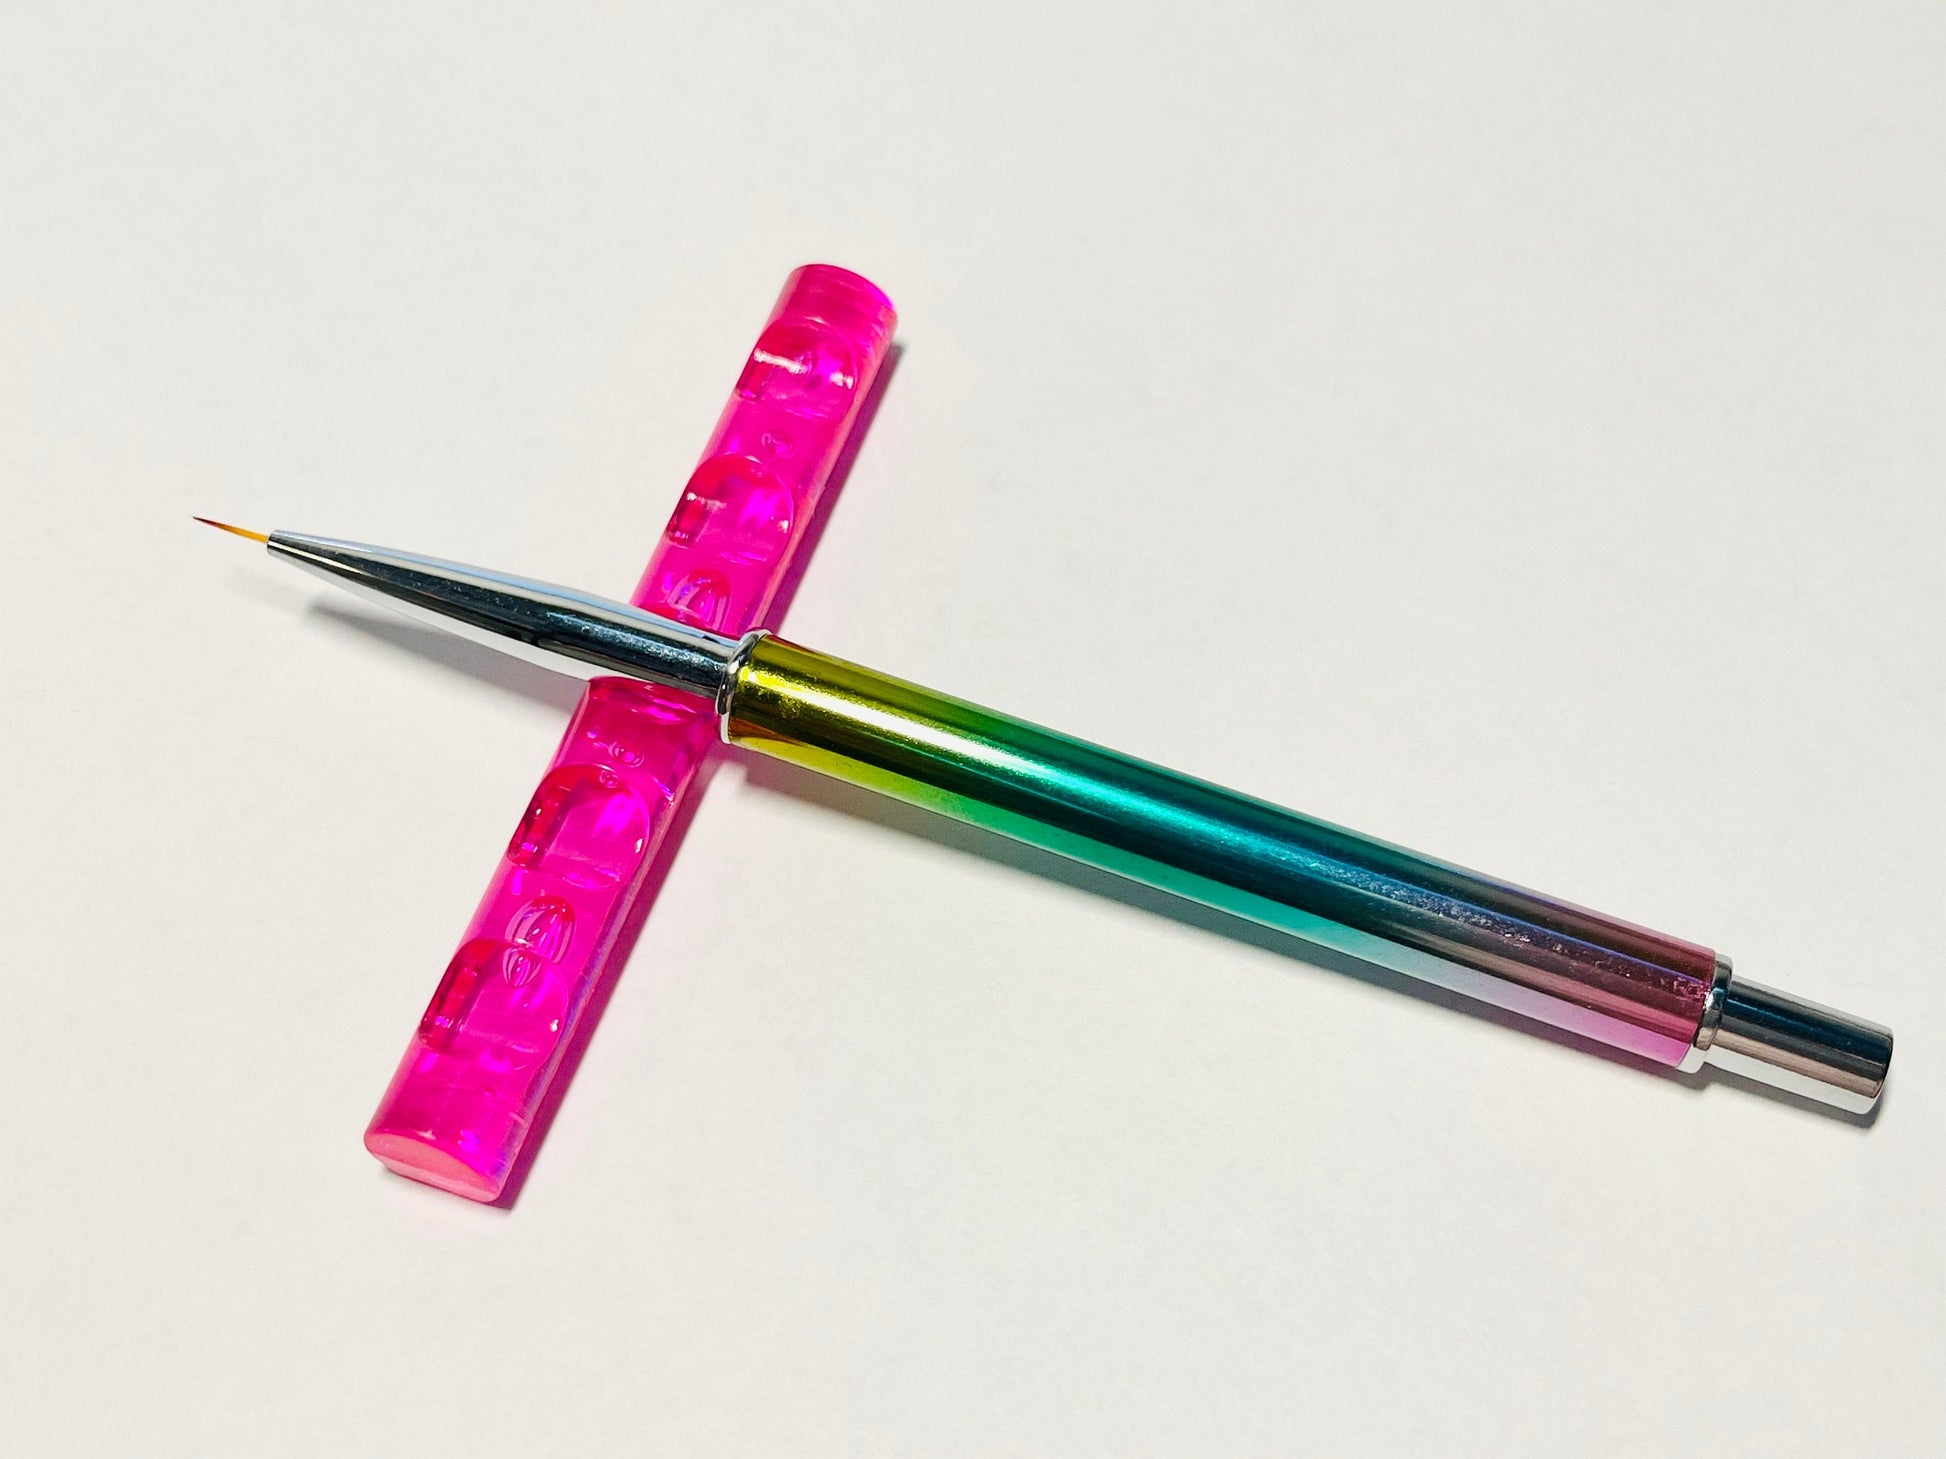 5 Grid Nail Art Brush Pen holder/ pen carrier/ nail brush support Stand Rack